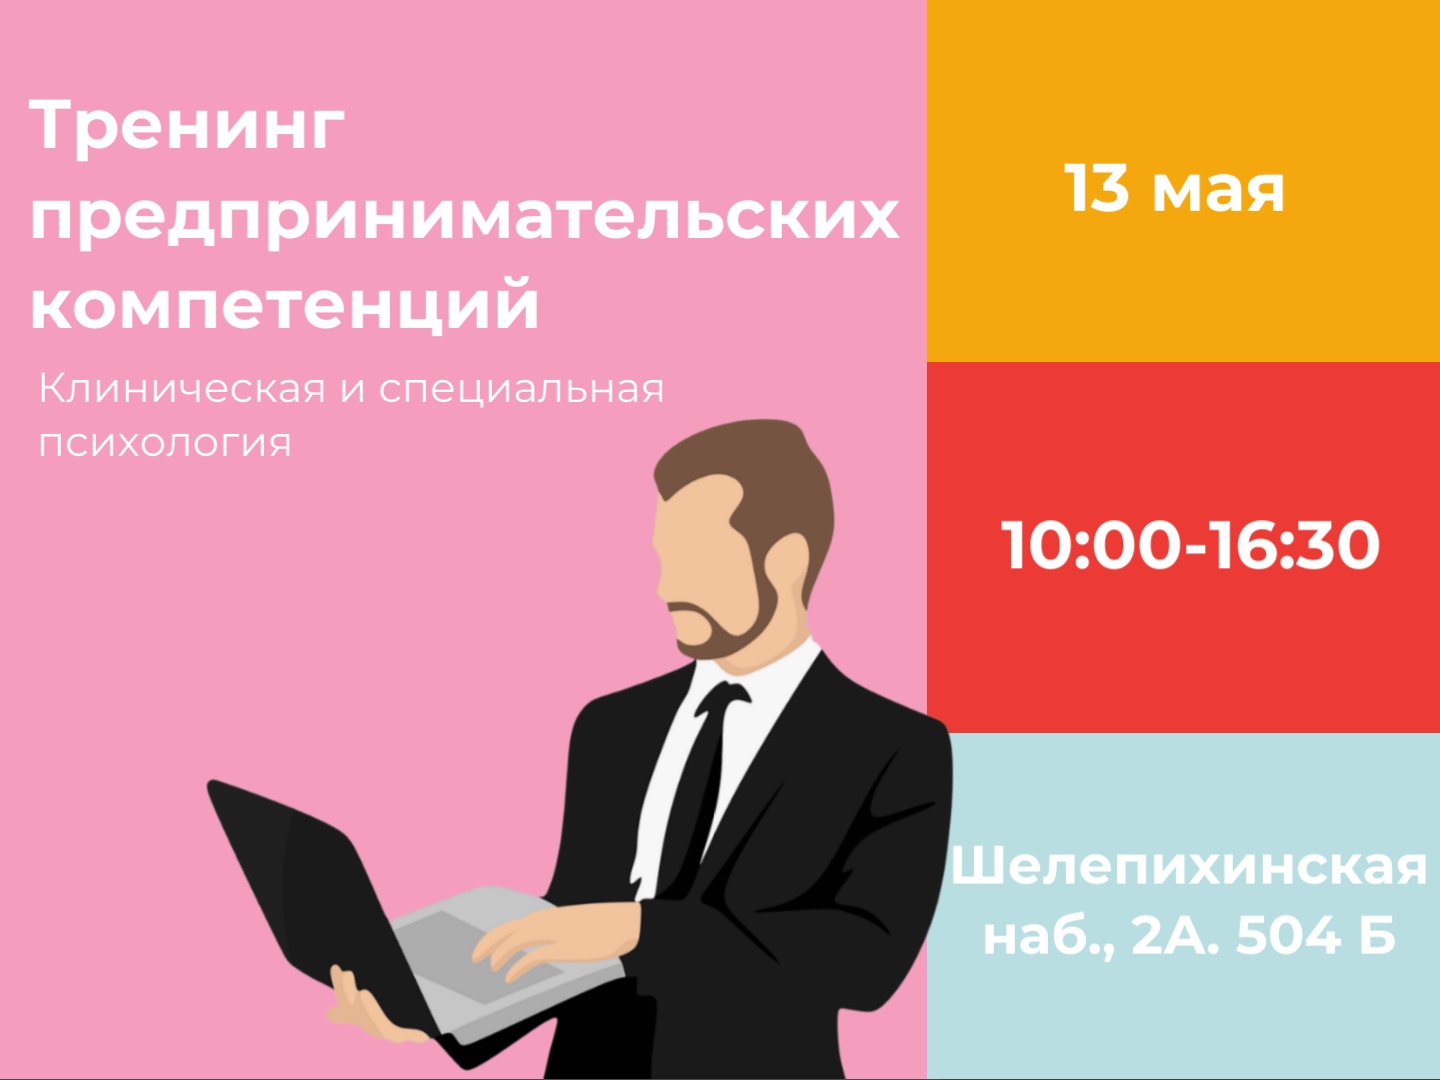 В МГППУ пройдут тренинги предпринимательских компетенций (13 мая)